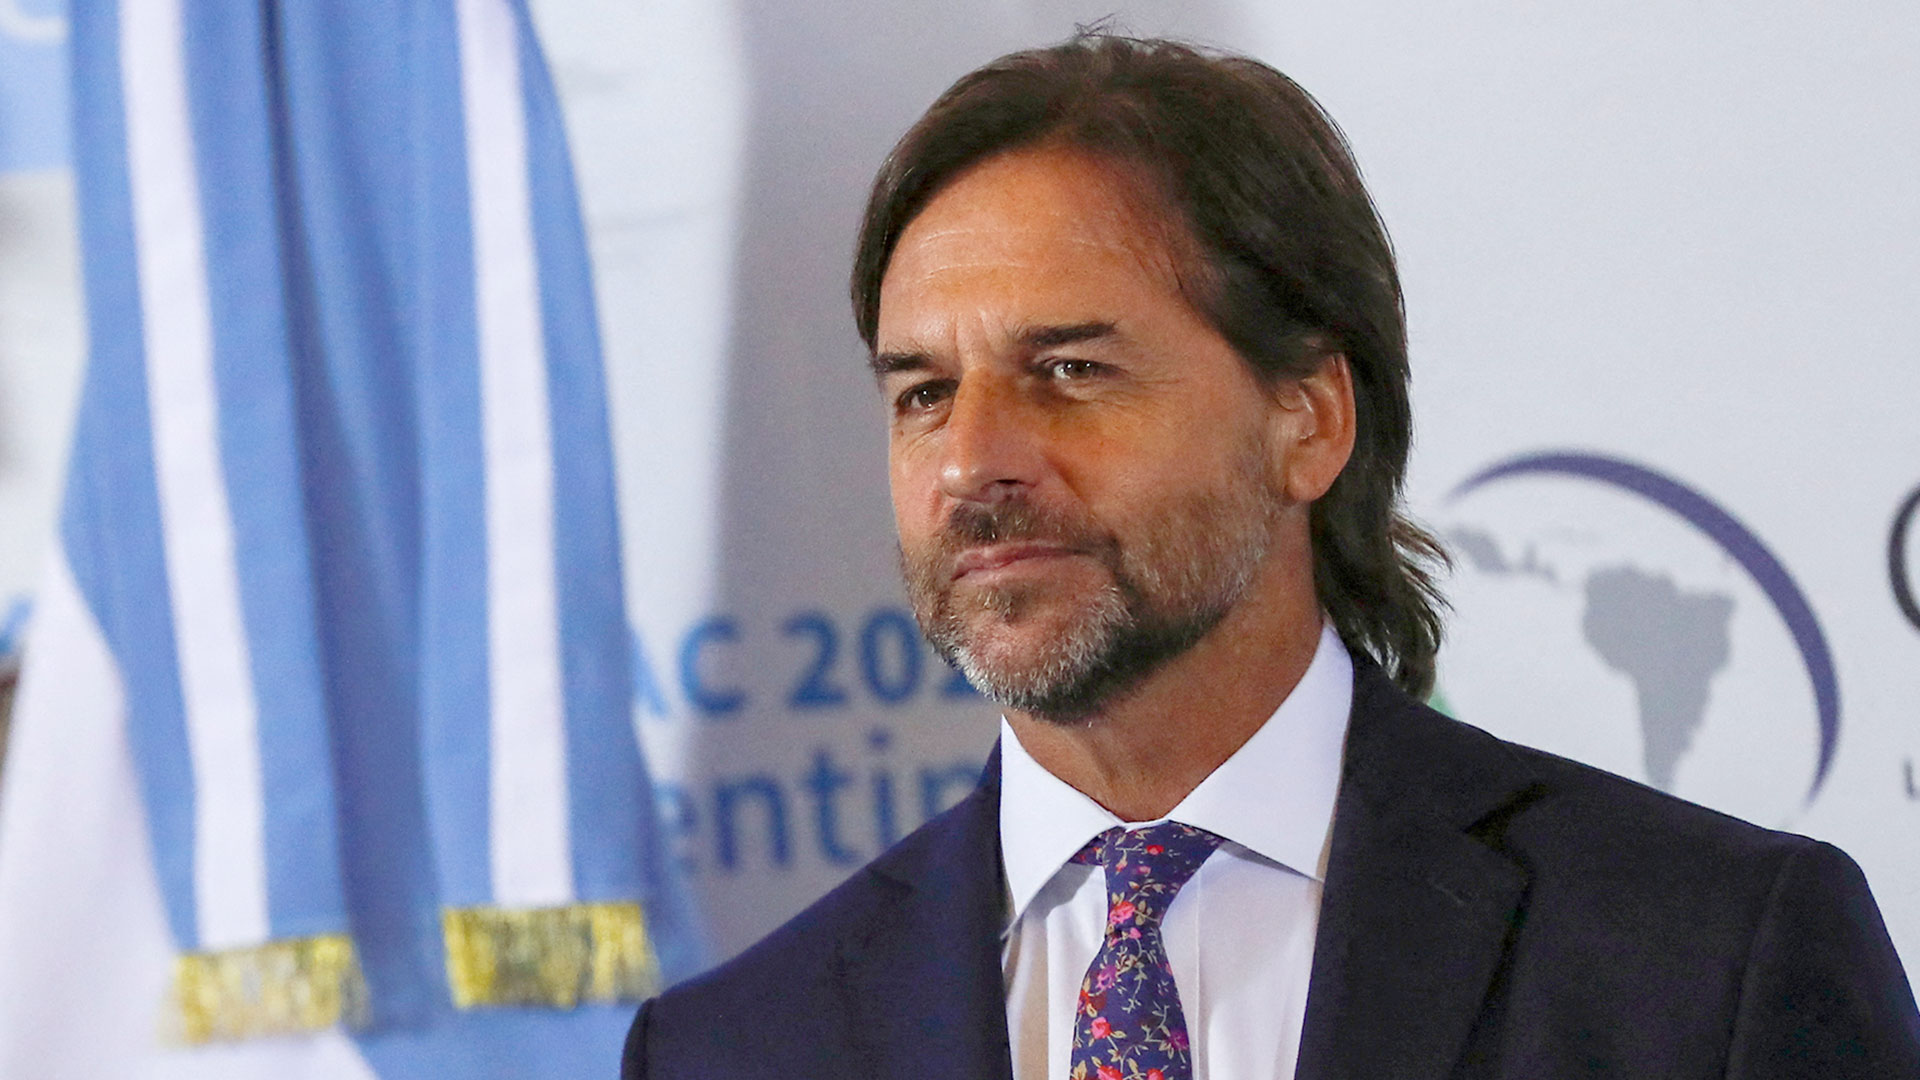 El Presidente de Uruguay reveló cómo llevó adelante la medida de rebaja de impuestos en su país